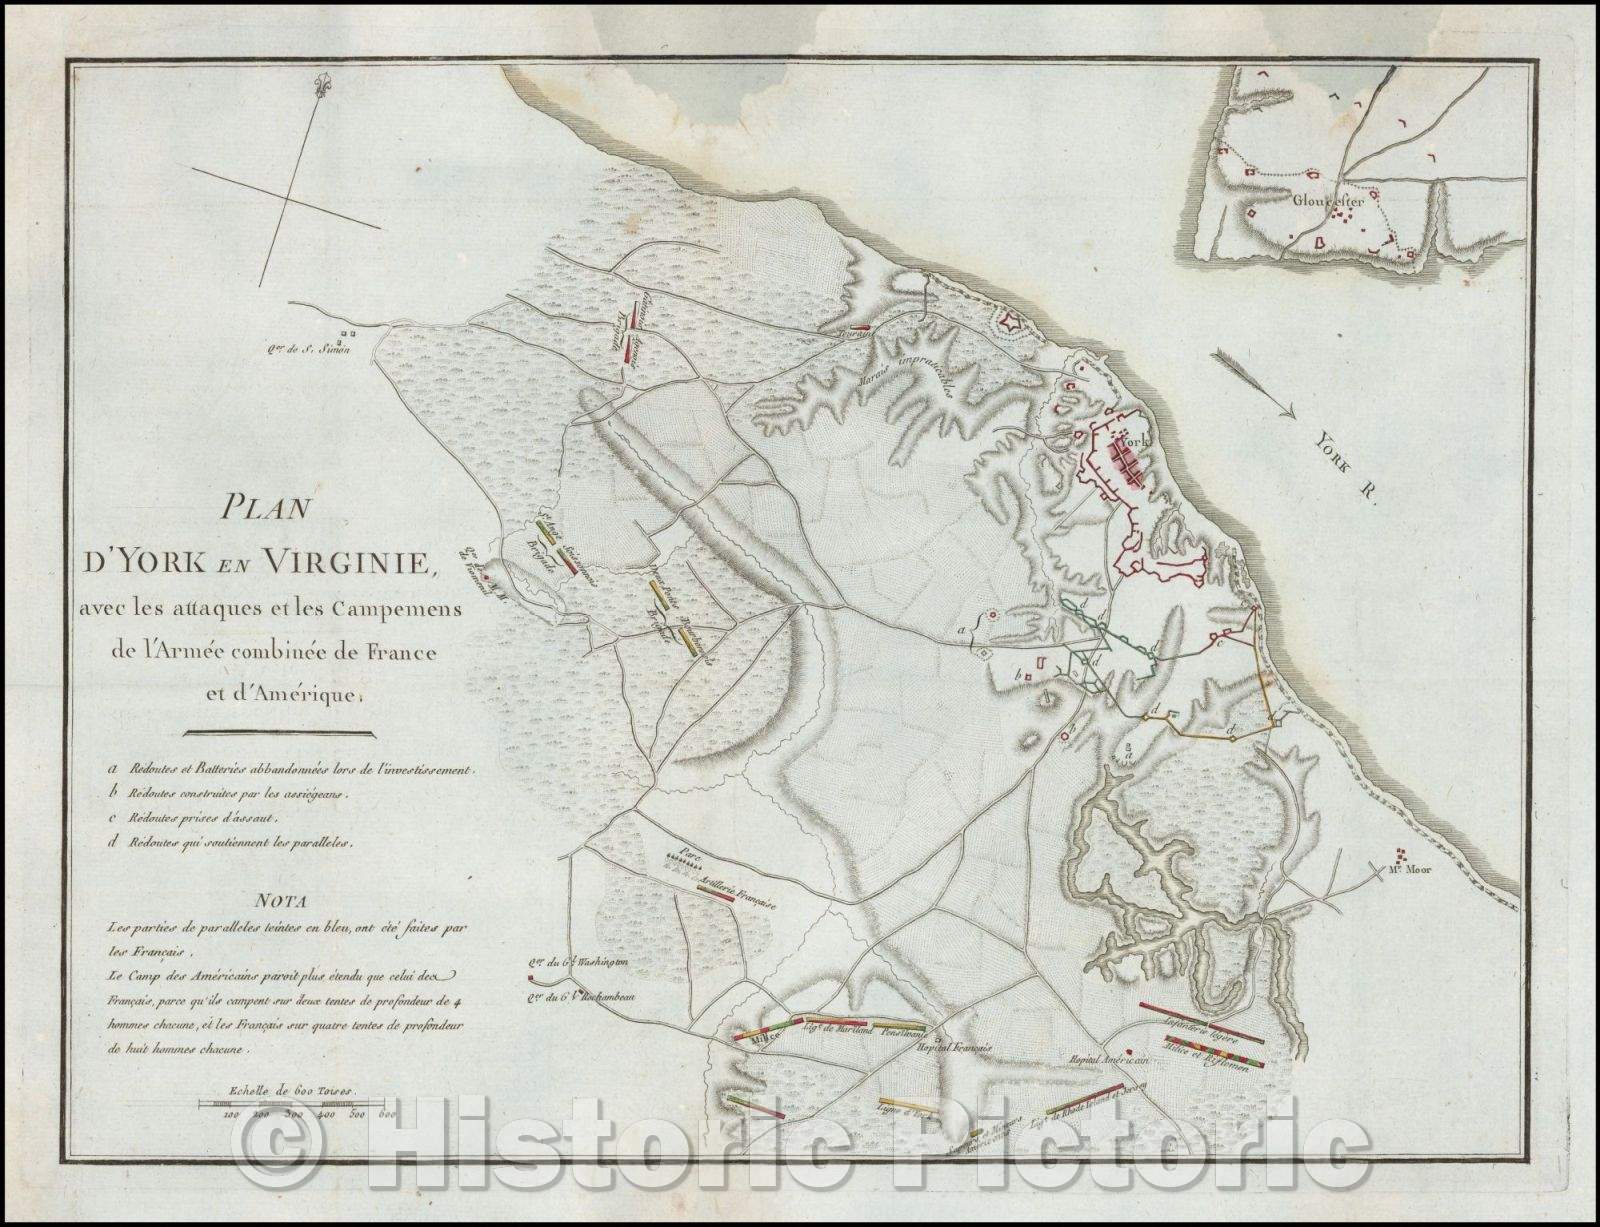 Historic Map - Plan D'York en Virginie avec les attaques et les Campemens de l'Armee combinee de France et d'Amerique/Plan of the Battle of Yorktown, 1787 - Vintage Wall Art